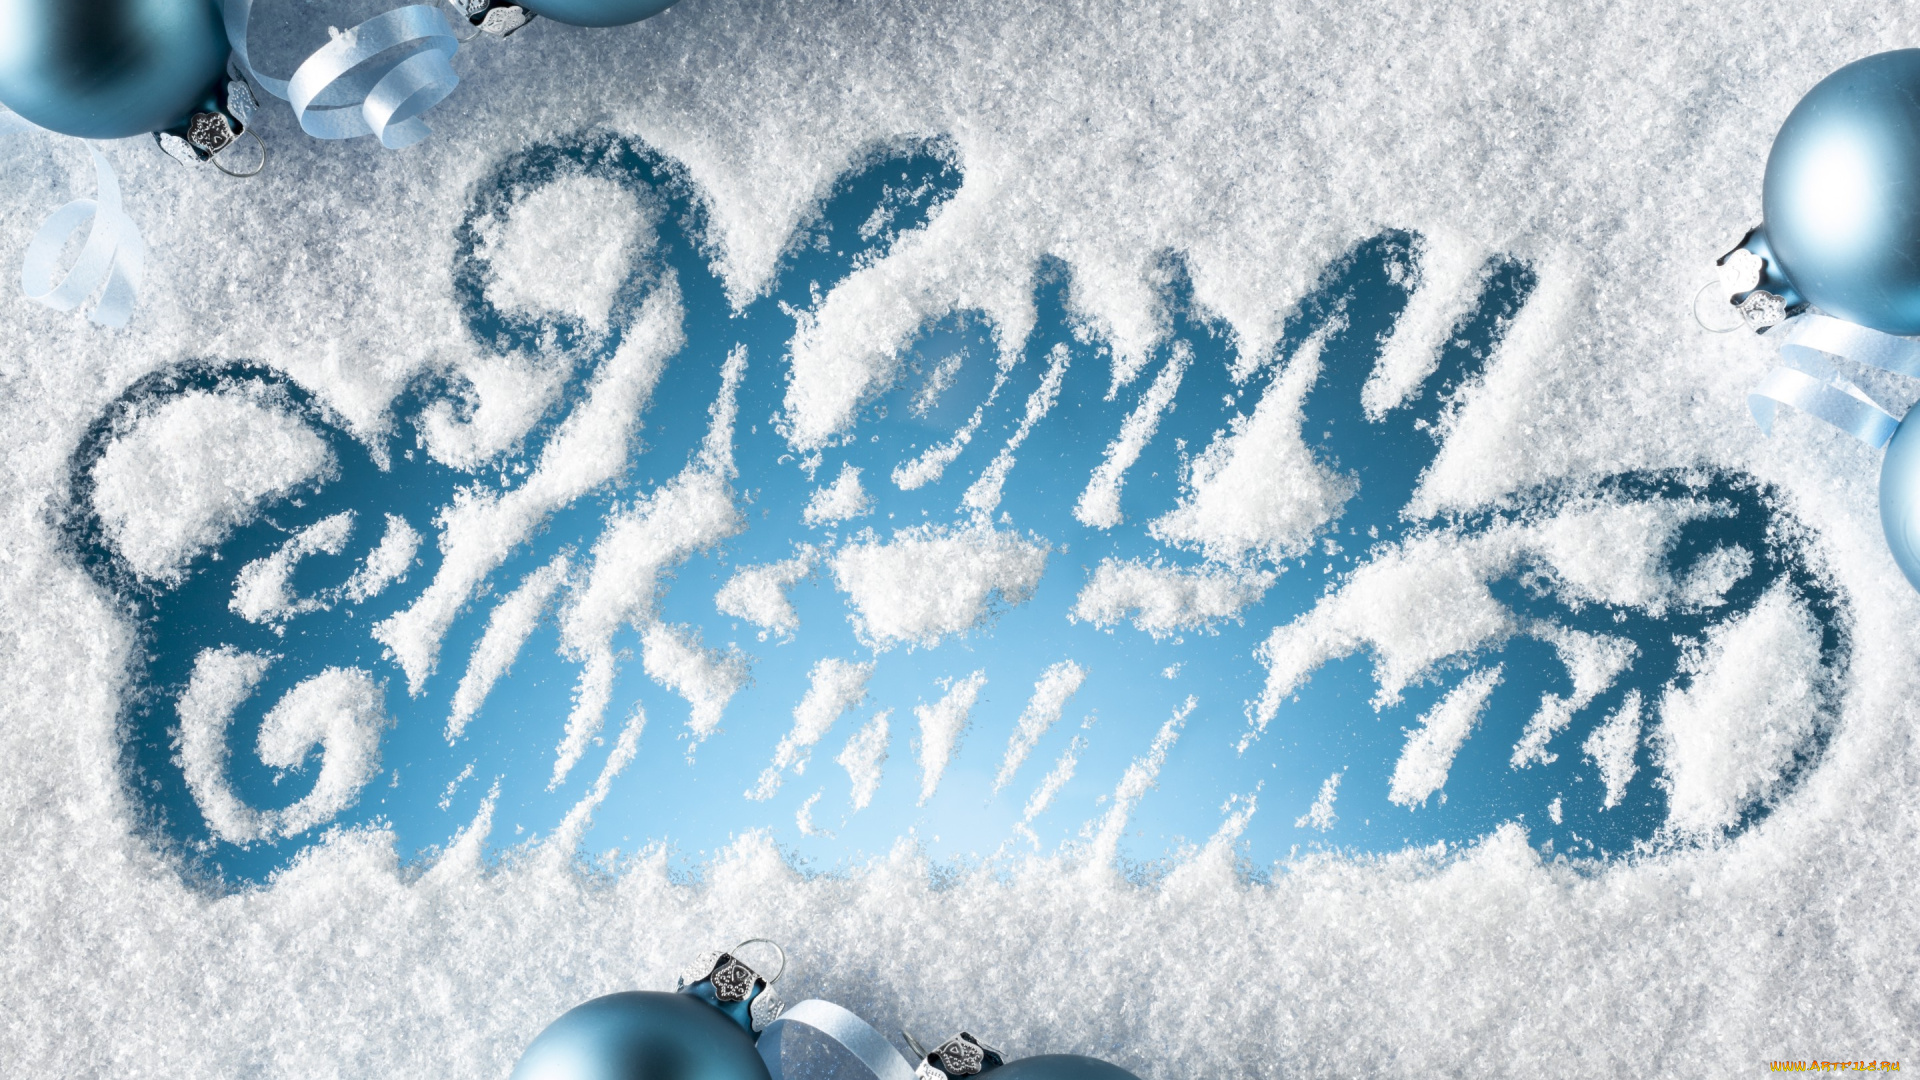 праздничные, -, разное, , новый, год, шары, снег, рождество, украшения, snow, merry, christmas, decoration, balls, новый, год, winter